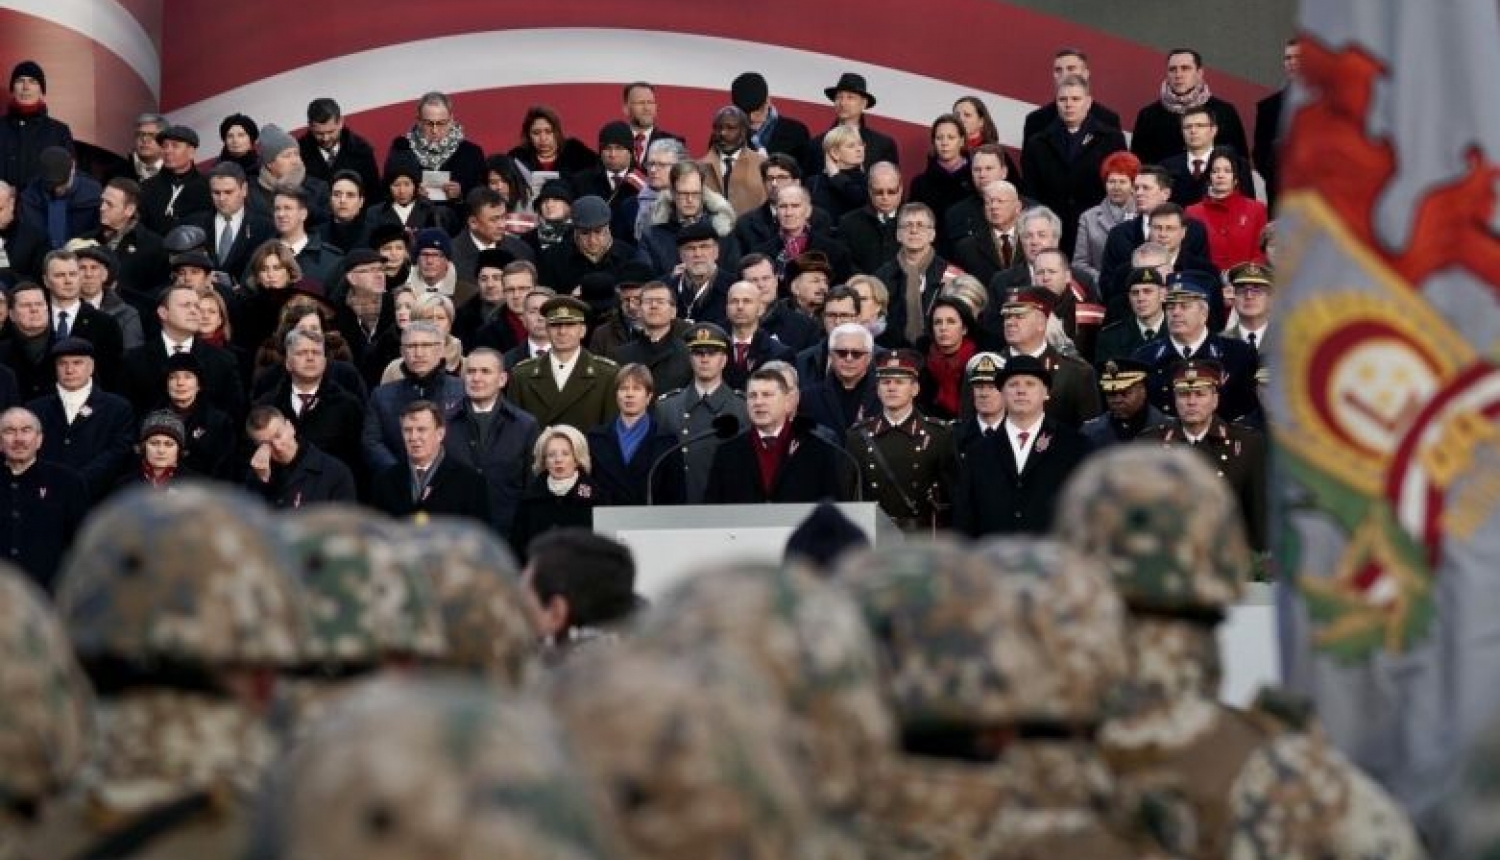 Valsts prezidenta Raimonda Vējoņa uzruna svinīgajā Nacionālo bruņoto spēku parādē 11. novembra krastmalā